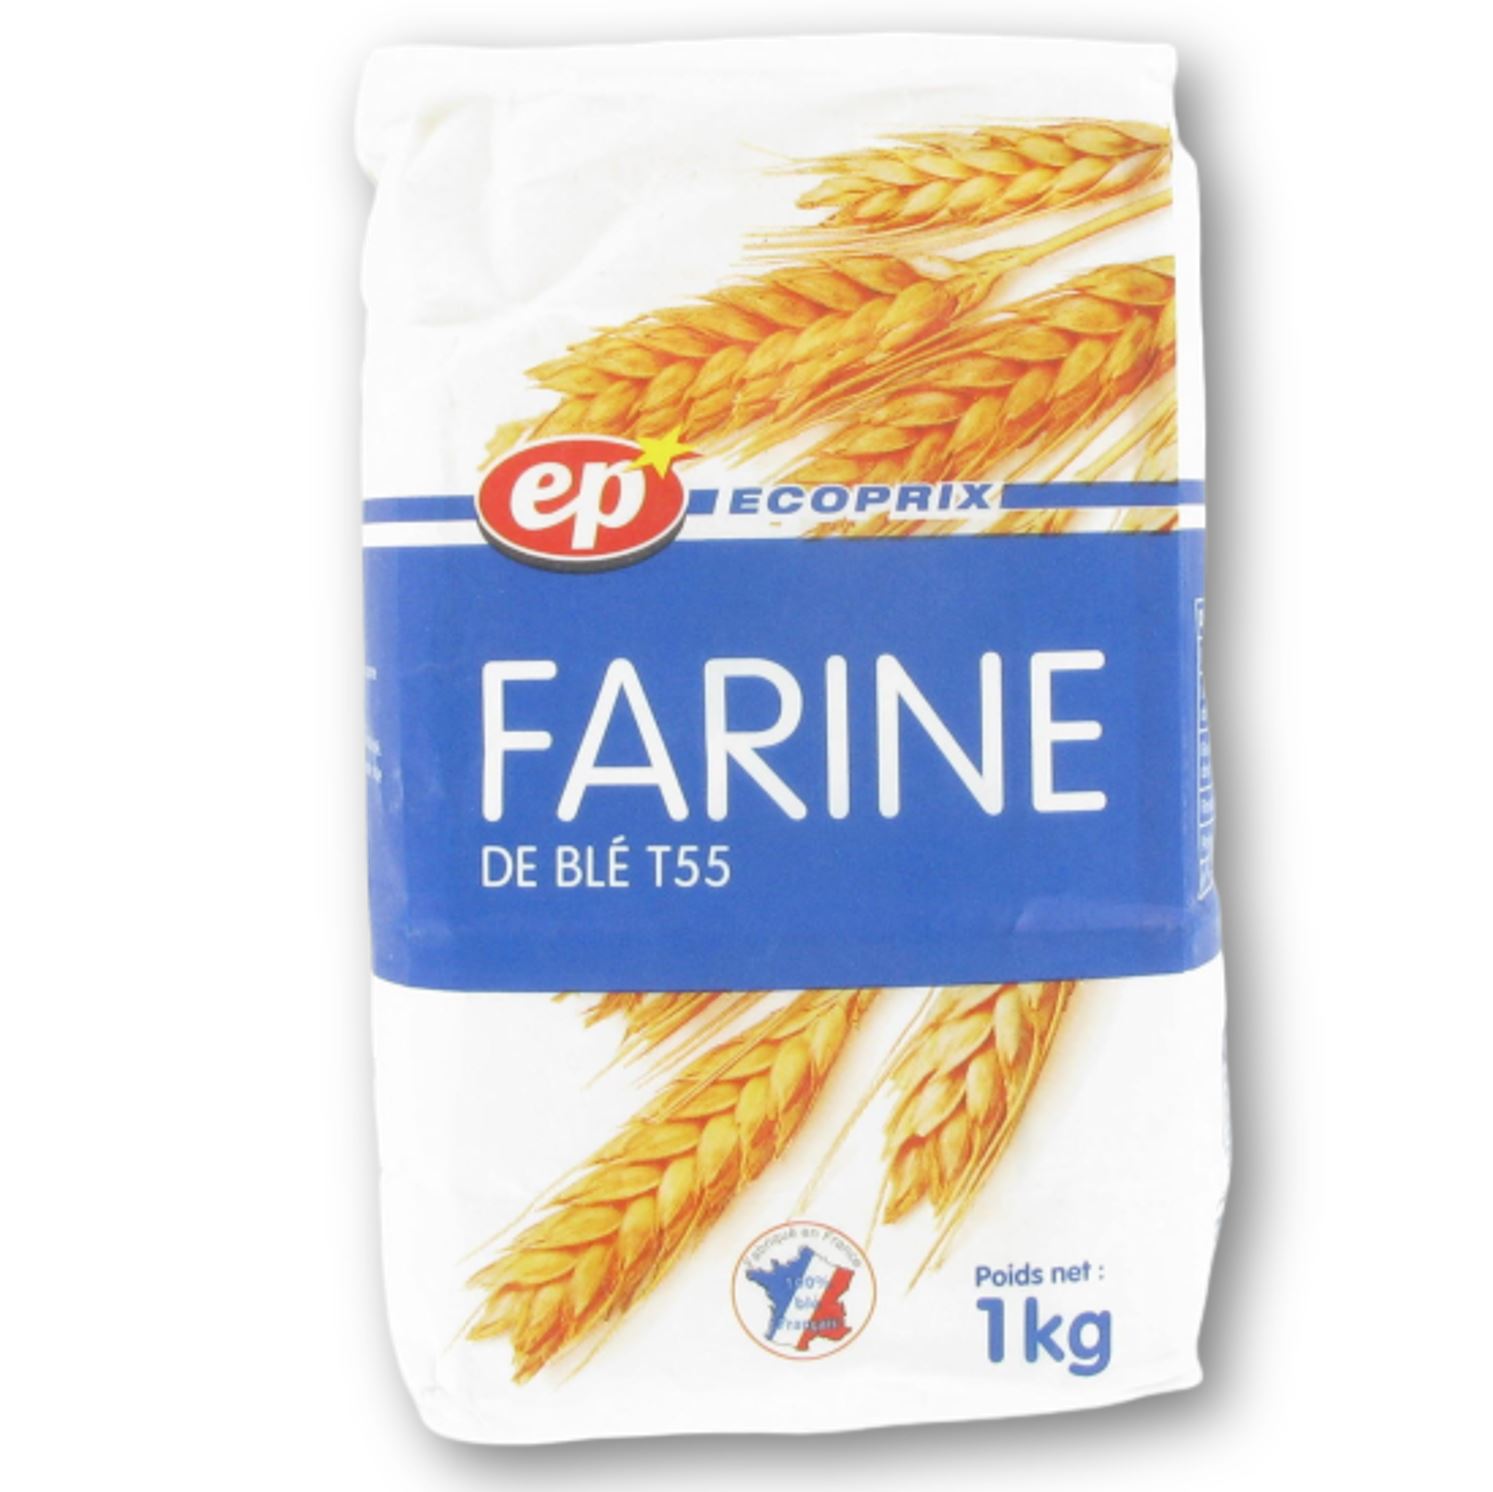 Farine de blé t55